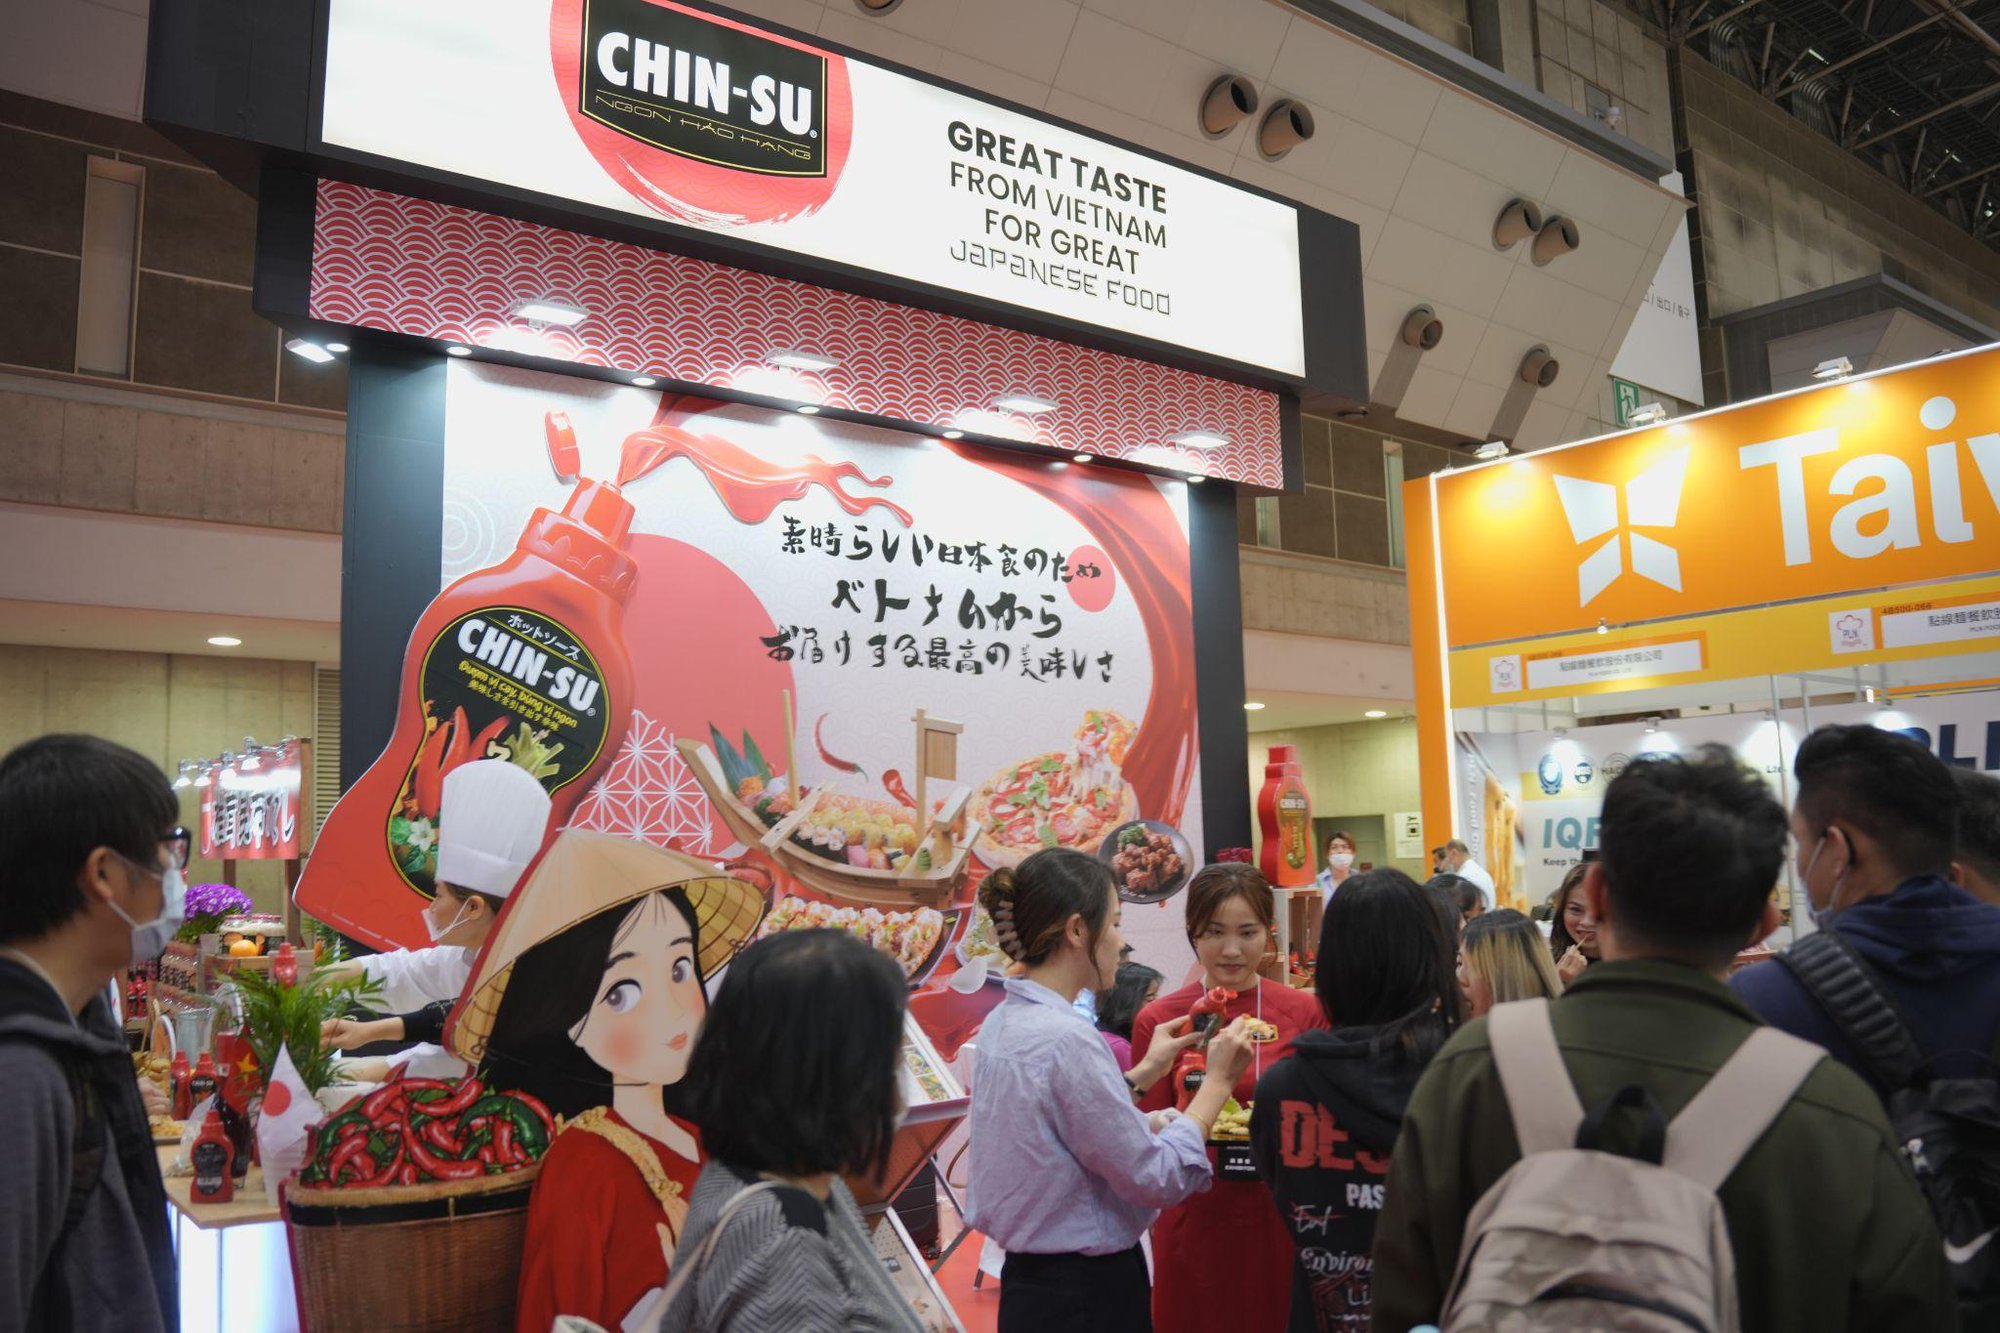 Tương ớt Chin-su gây ấn tượng mạnh tại Nhật Bản, ra mắt tận 5 hương vị mới - Ảnh 4.